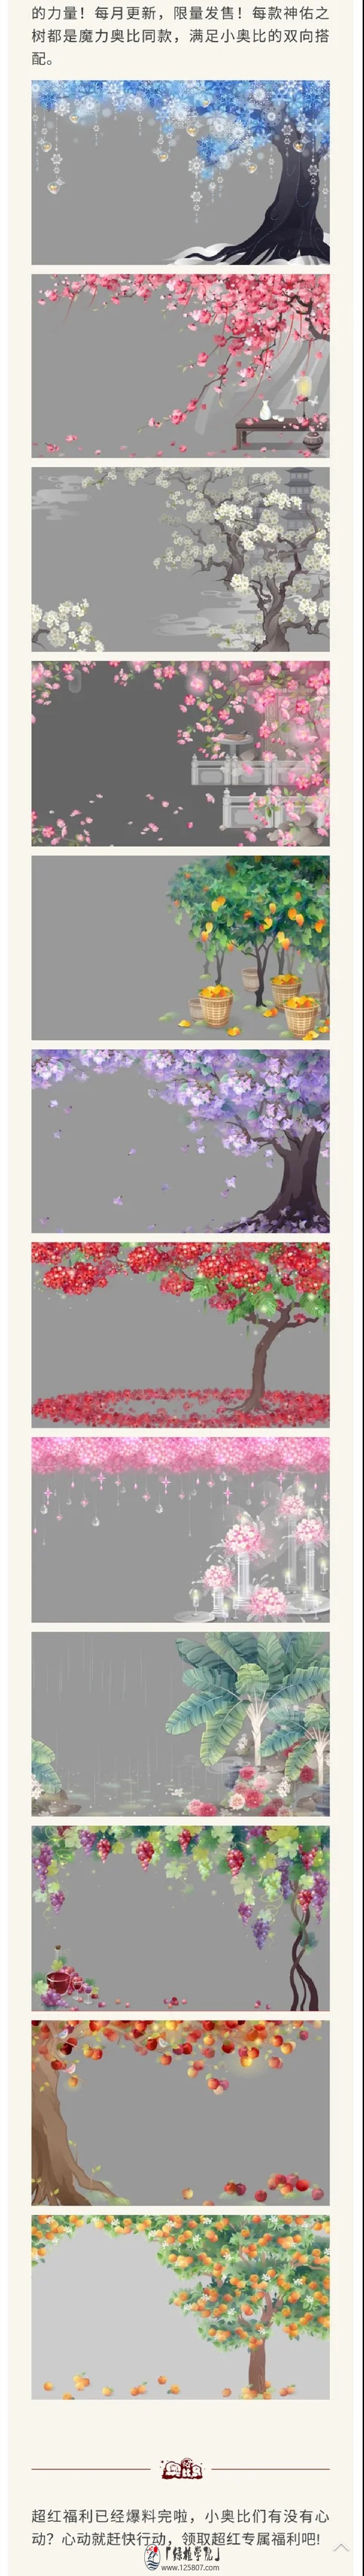 【氵】六月或七月的超红树可能会是梧桐花吧-1.jpg